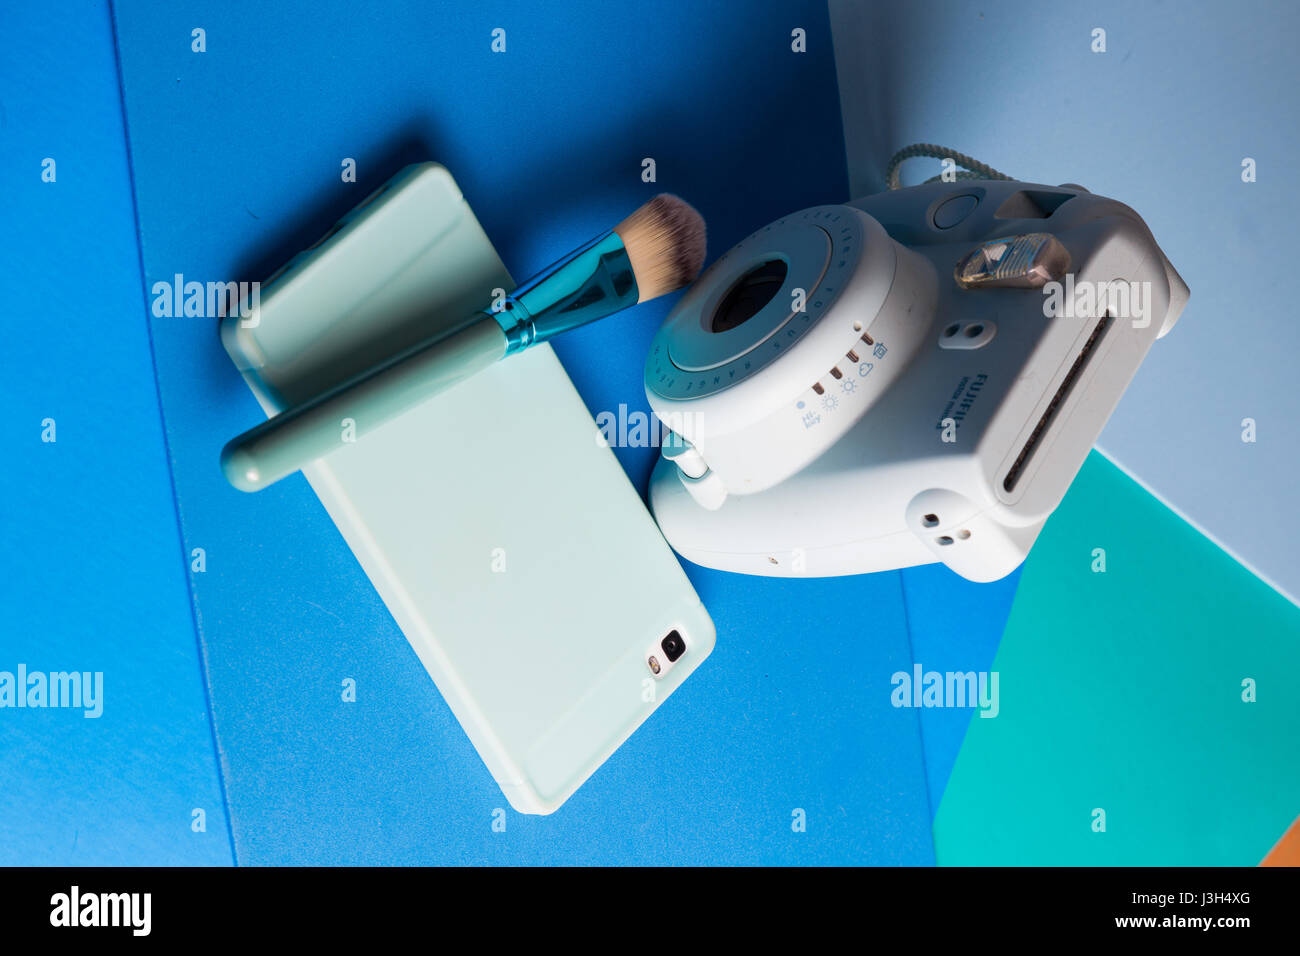 Ihr Leben auf Blautöne: Stillleben mit einer Sofortbild-Kamera, Smartphone und einem Make-up-Pinsel in eine mehrfarbig Blautöne platziert Stockfoto